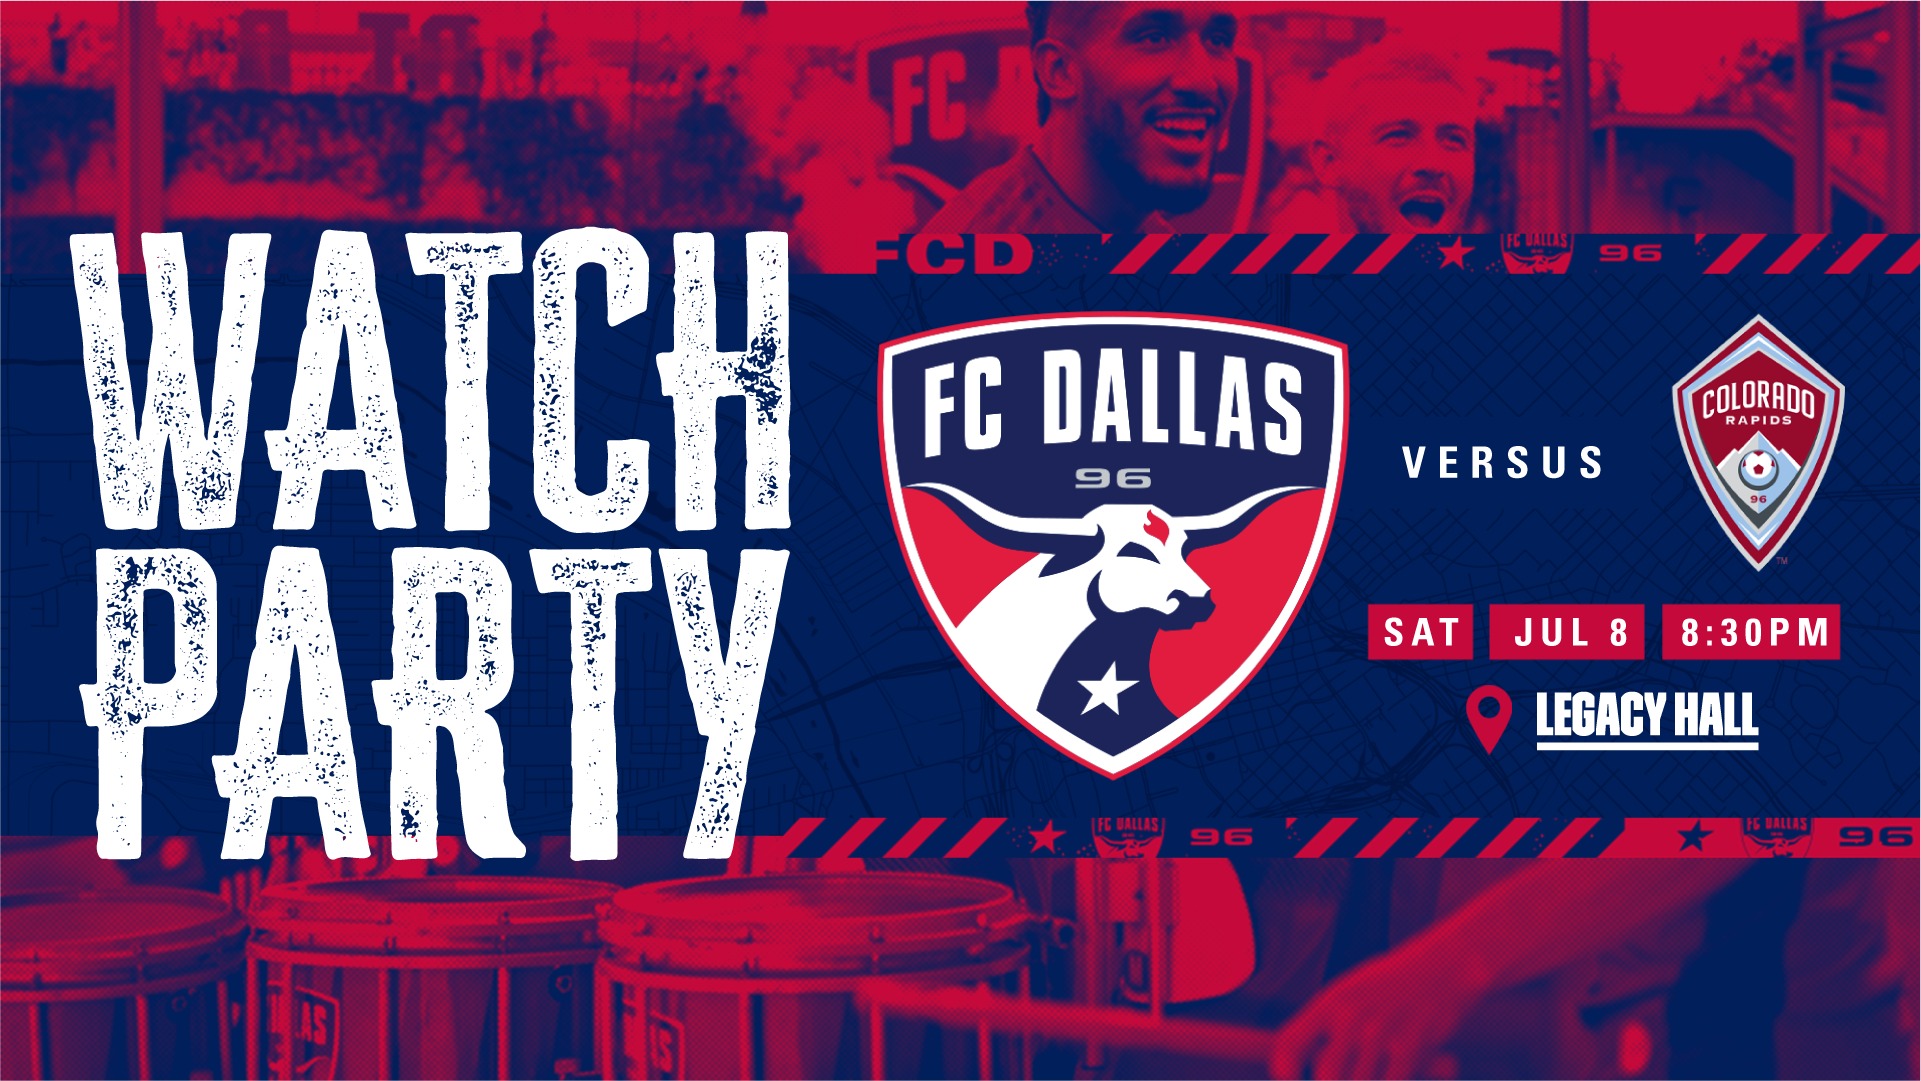 FC Dallas VS Colorado Watch Party